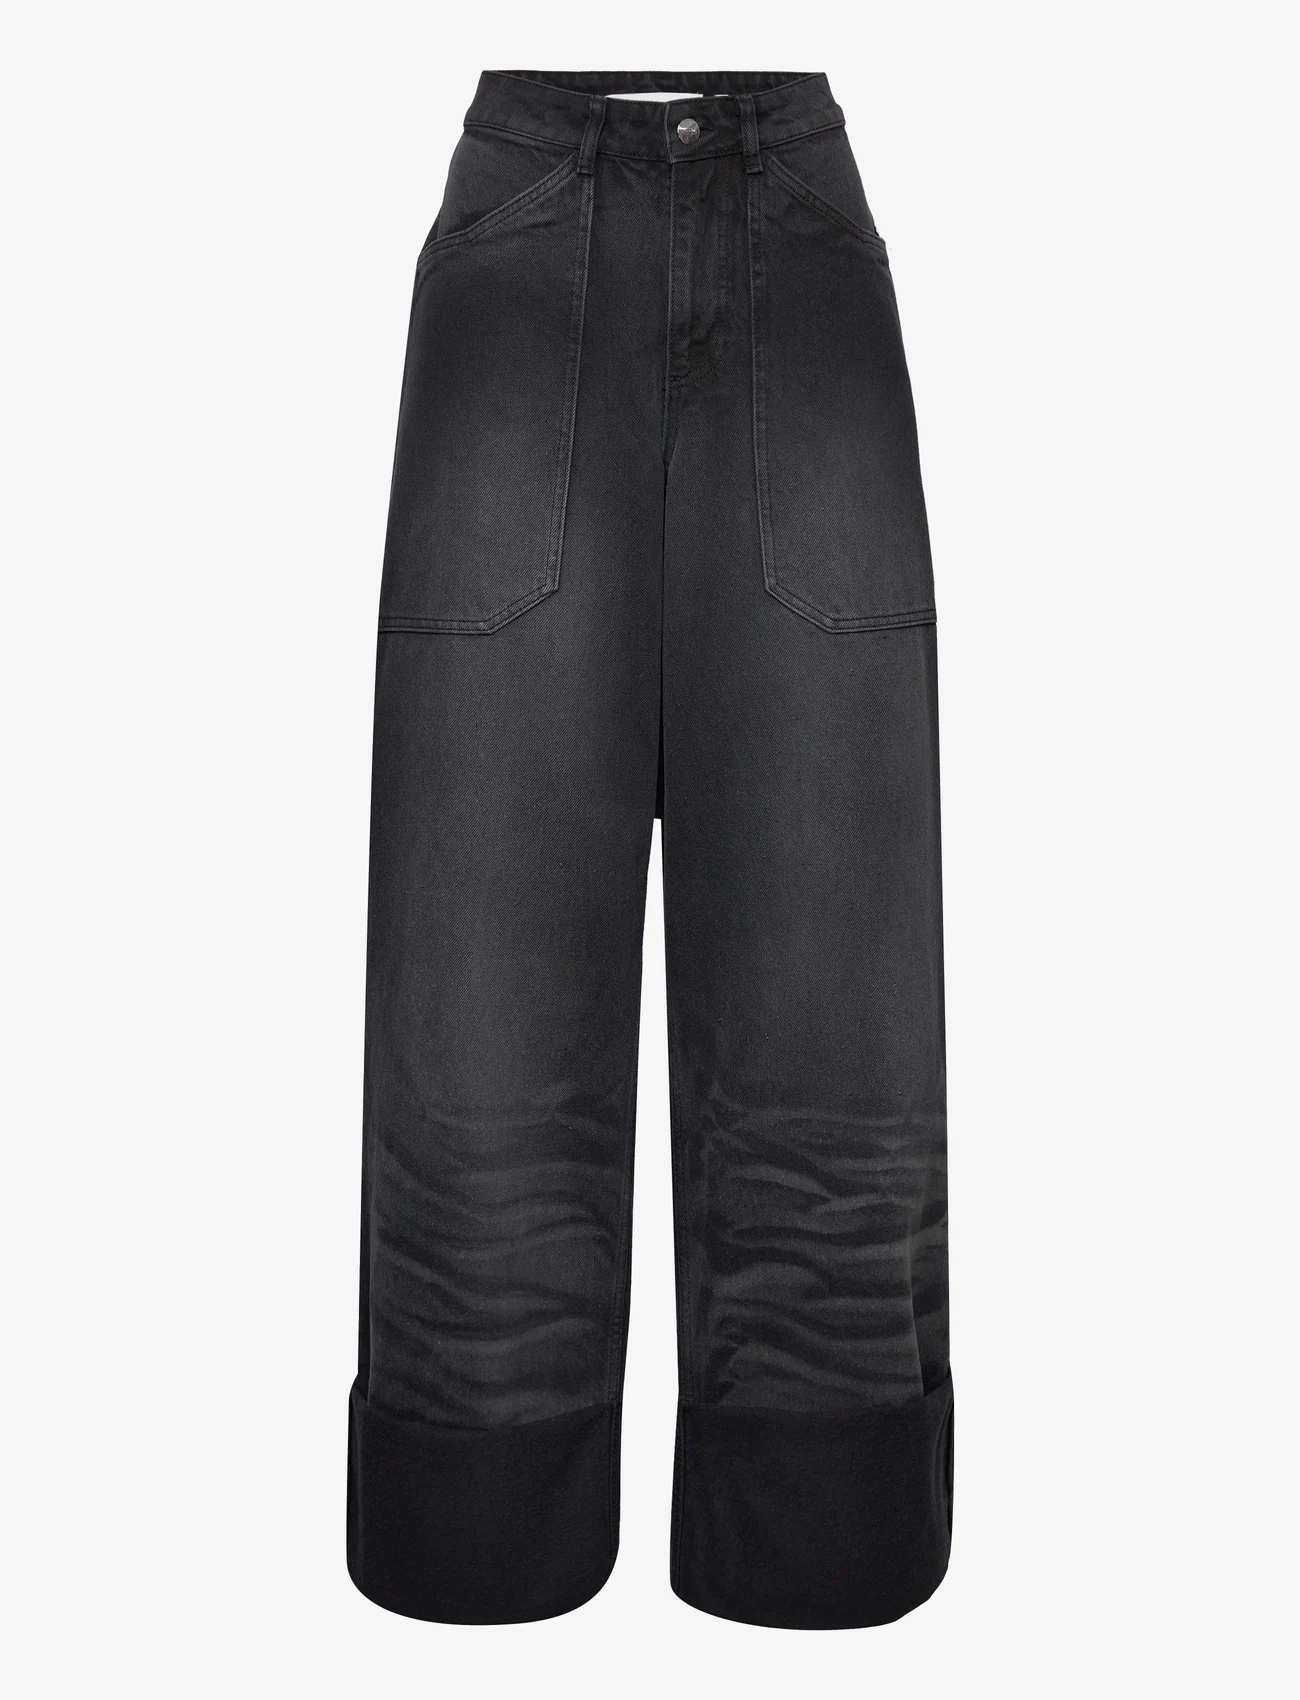 Cannari Concept - Black Wash Loose Jeans - broeken met wijde pijpen - forged iron - 0